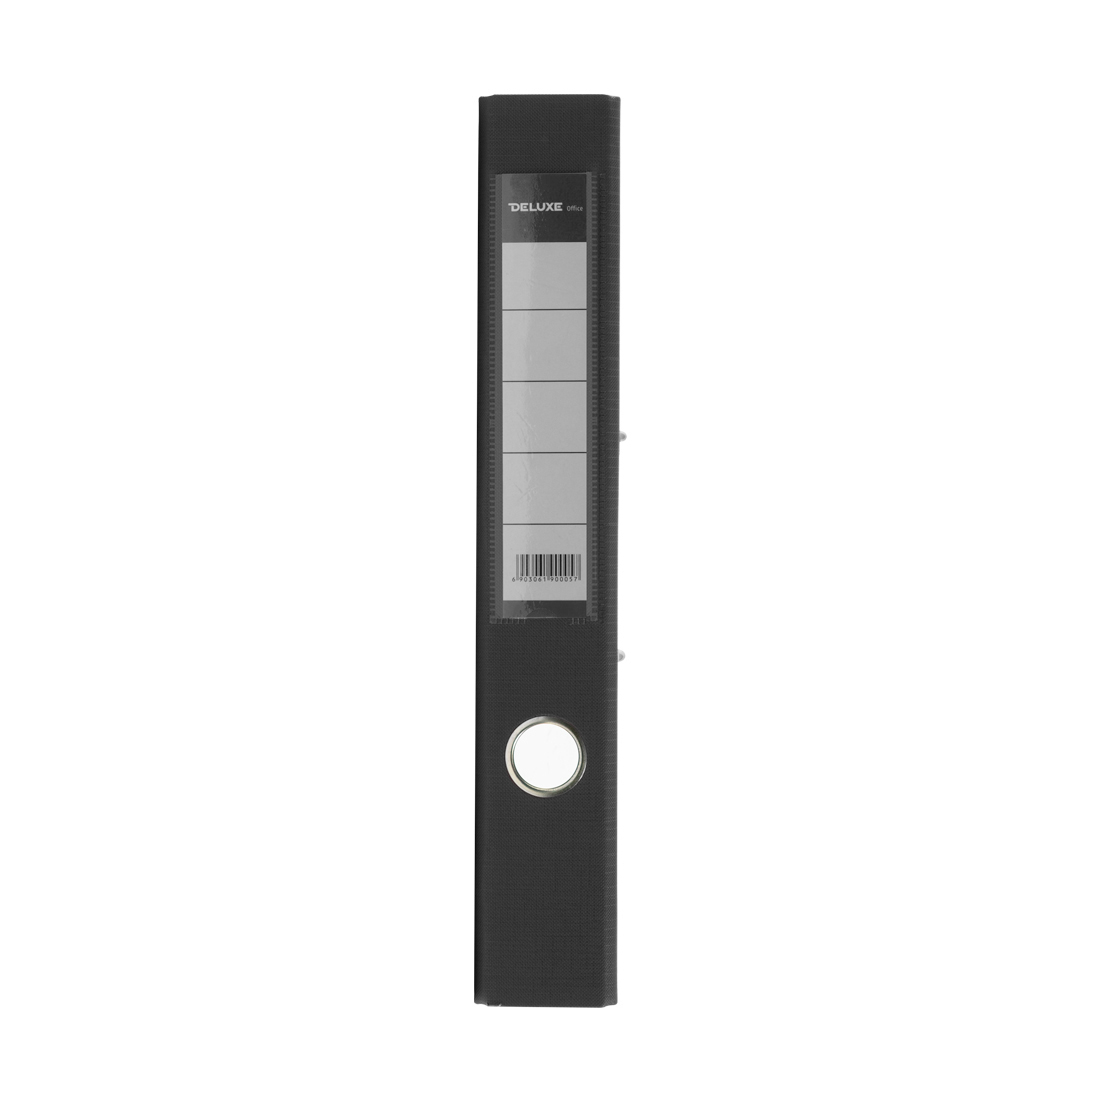 Папка-регистратор Deluxe с арочным механизмом, Office 2-GY27, А4, 50 мм, серый